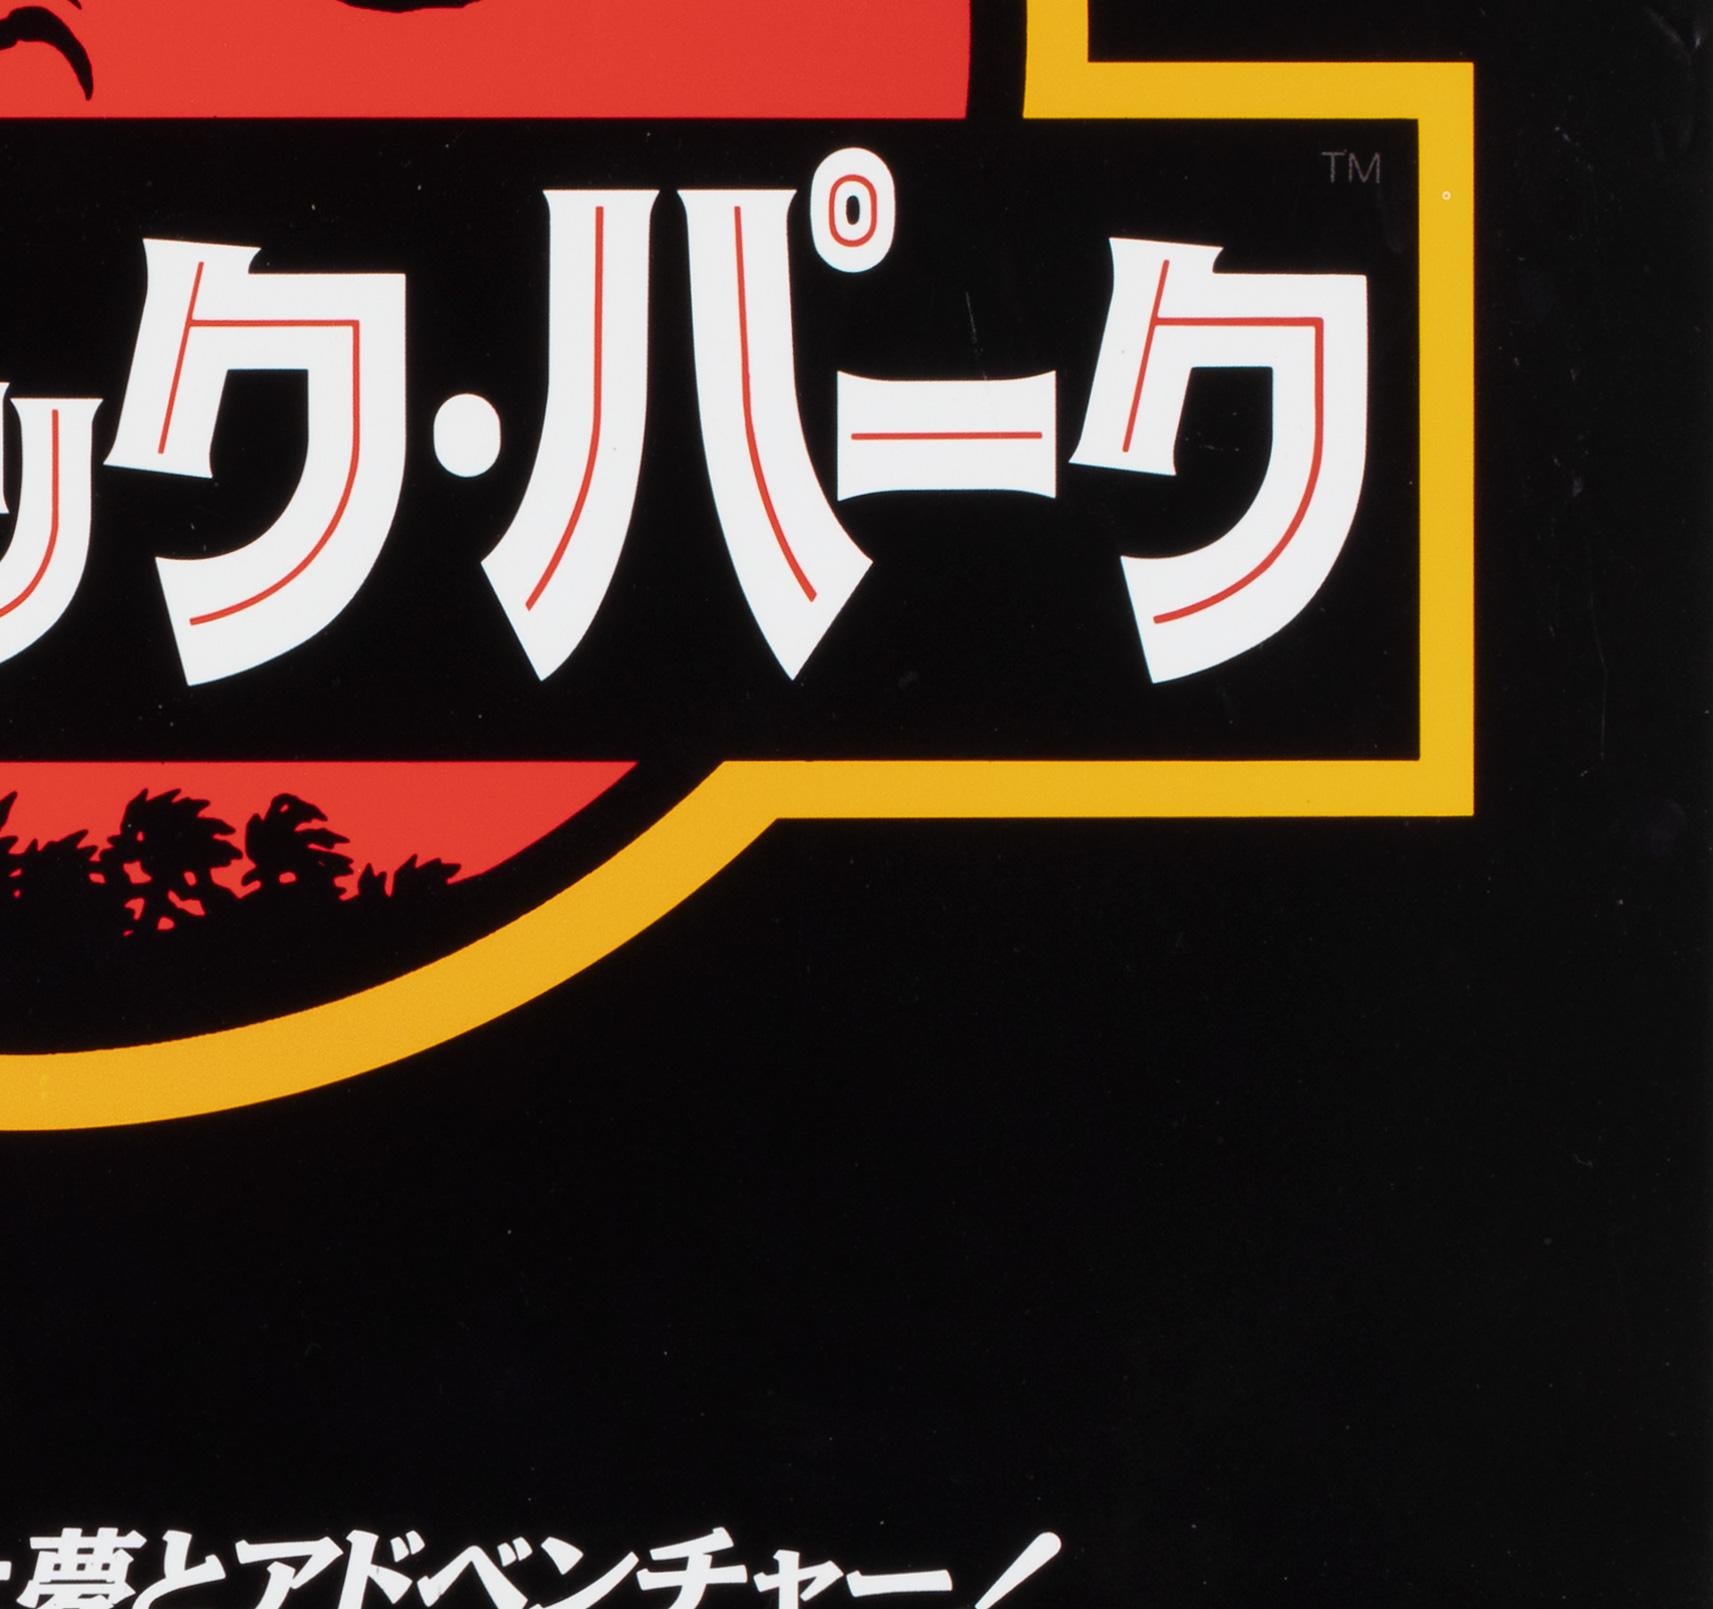 Papier Jurassic Park 1993 Affiche du film japonais B2